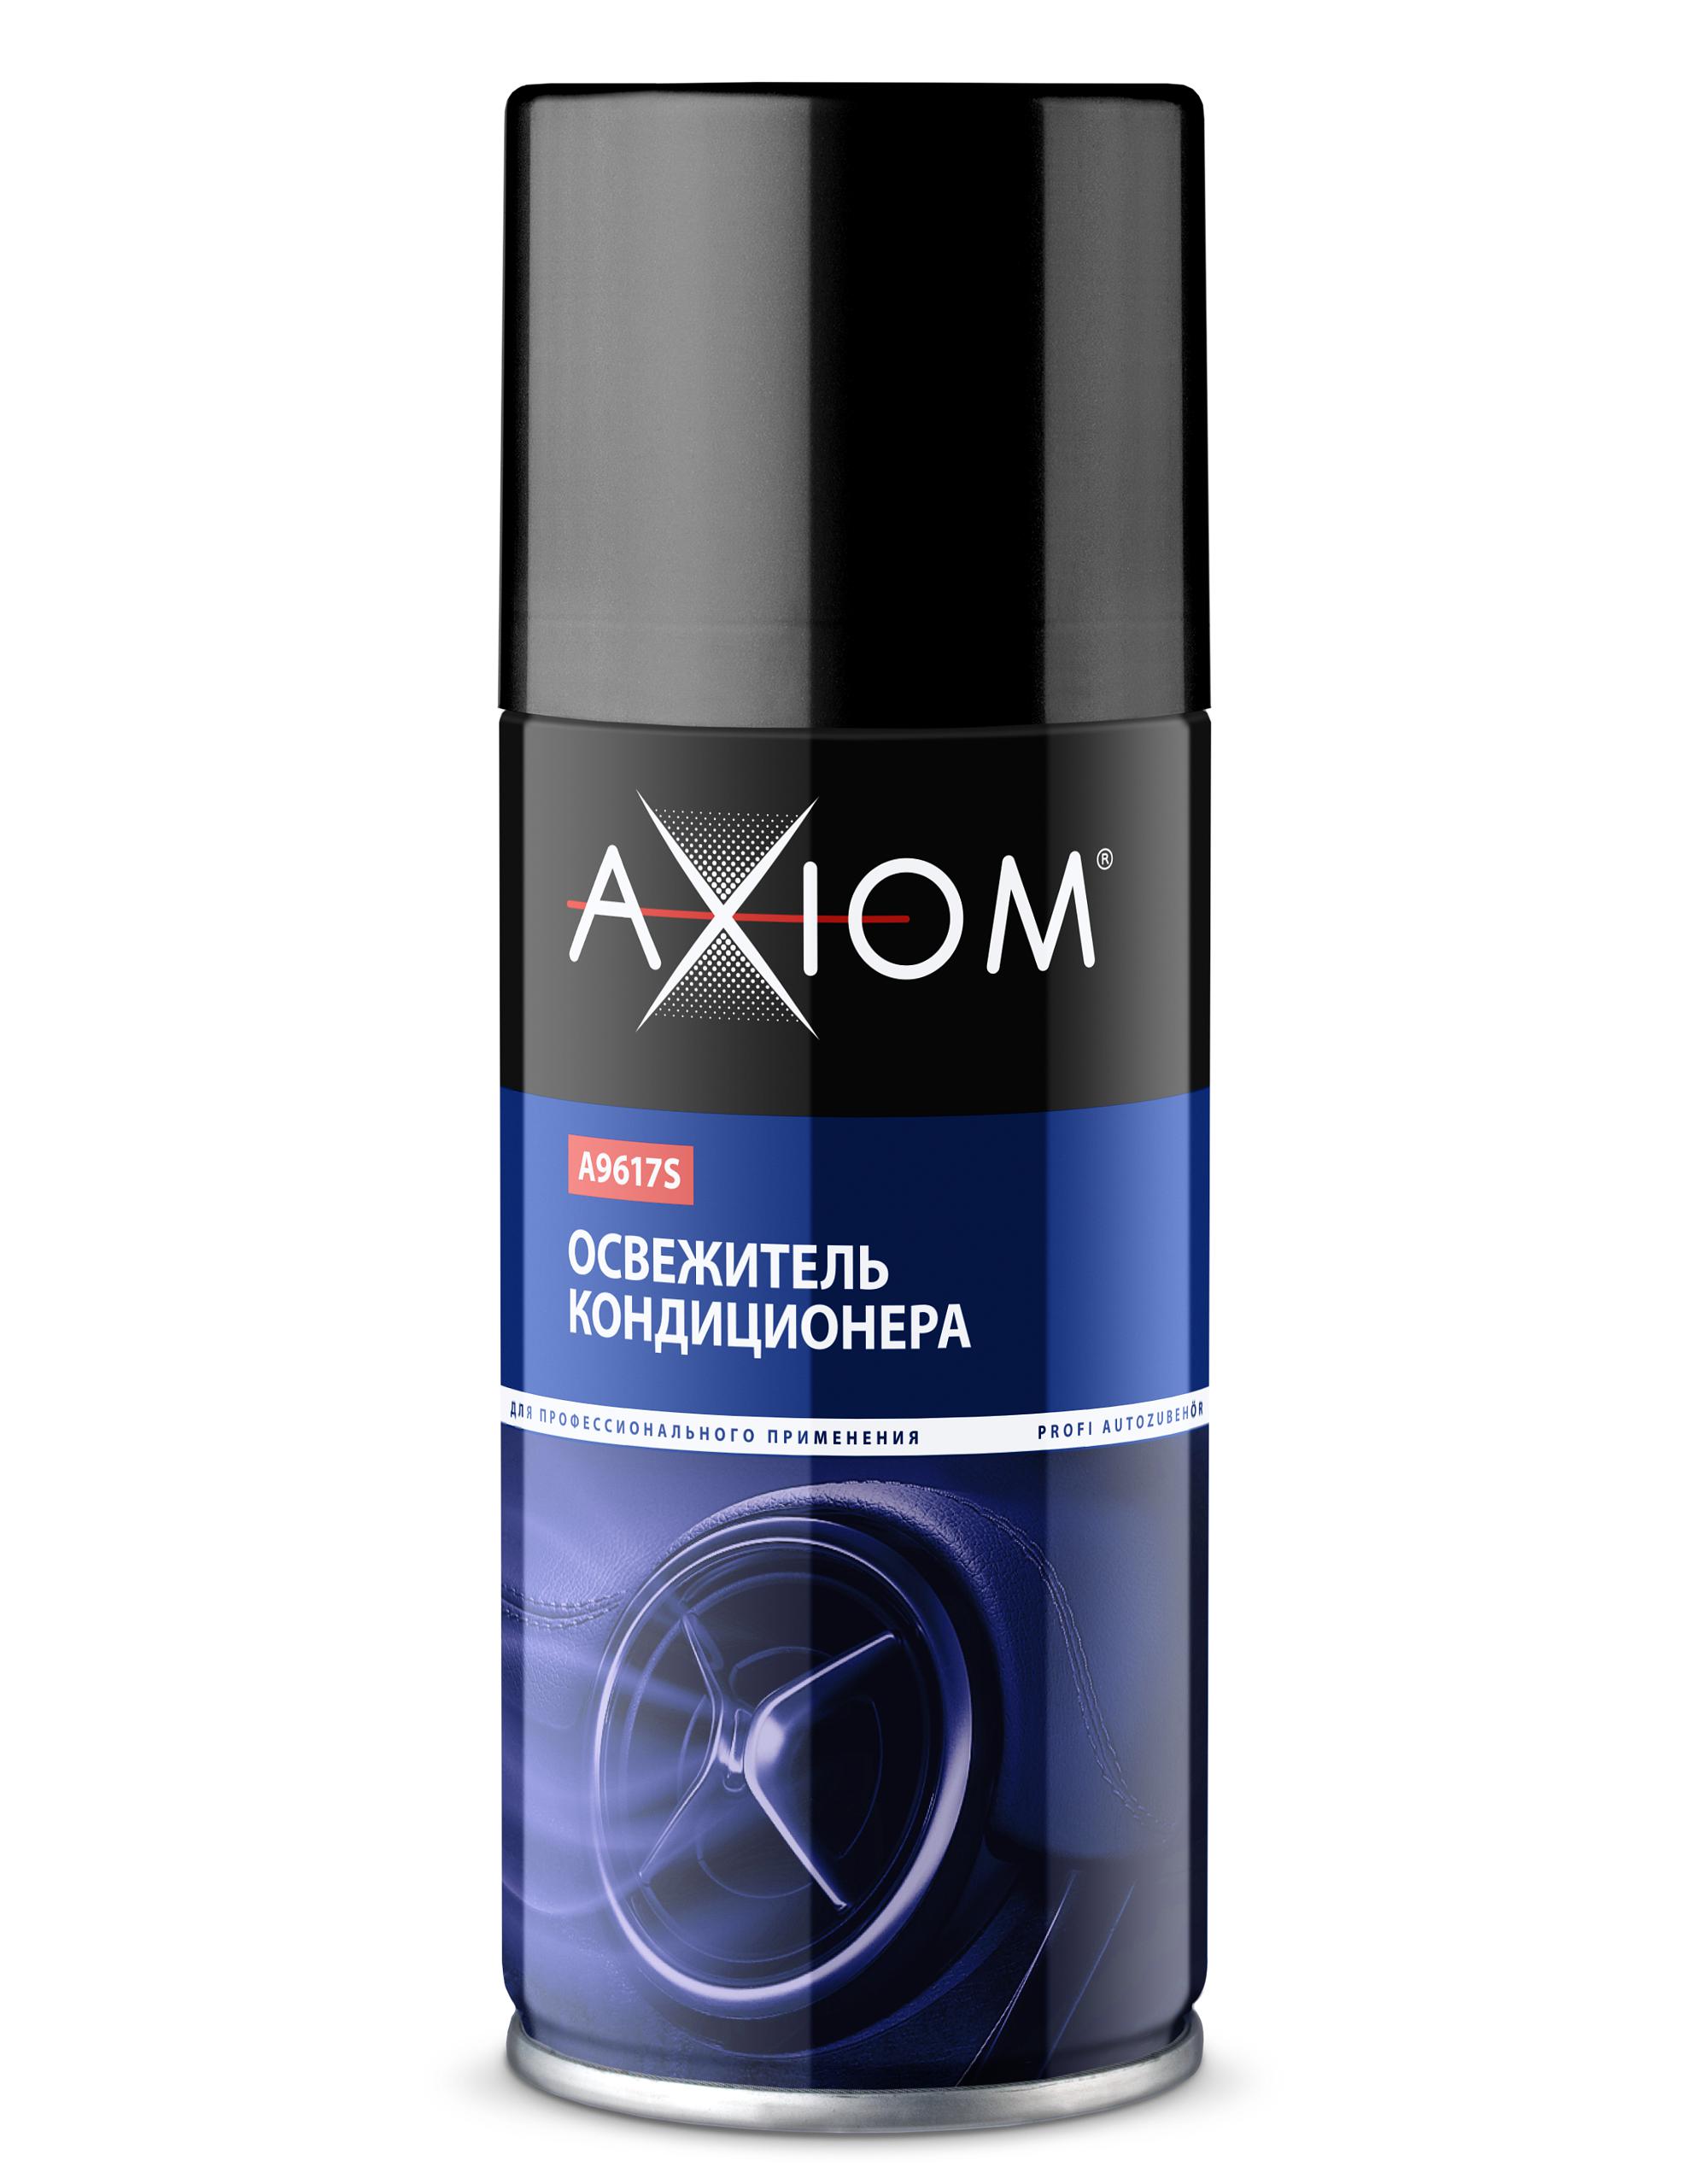 AXIOM A9617S Освежитель! кондиционера, ликвидатор запахов, аэрозоль, 210мл